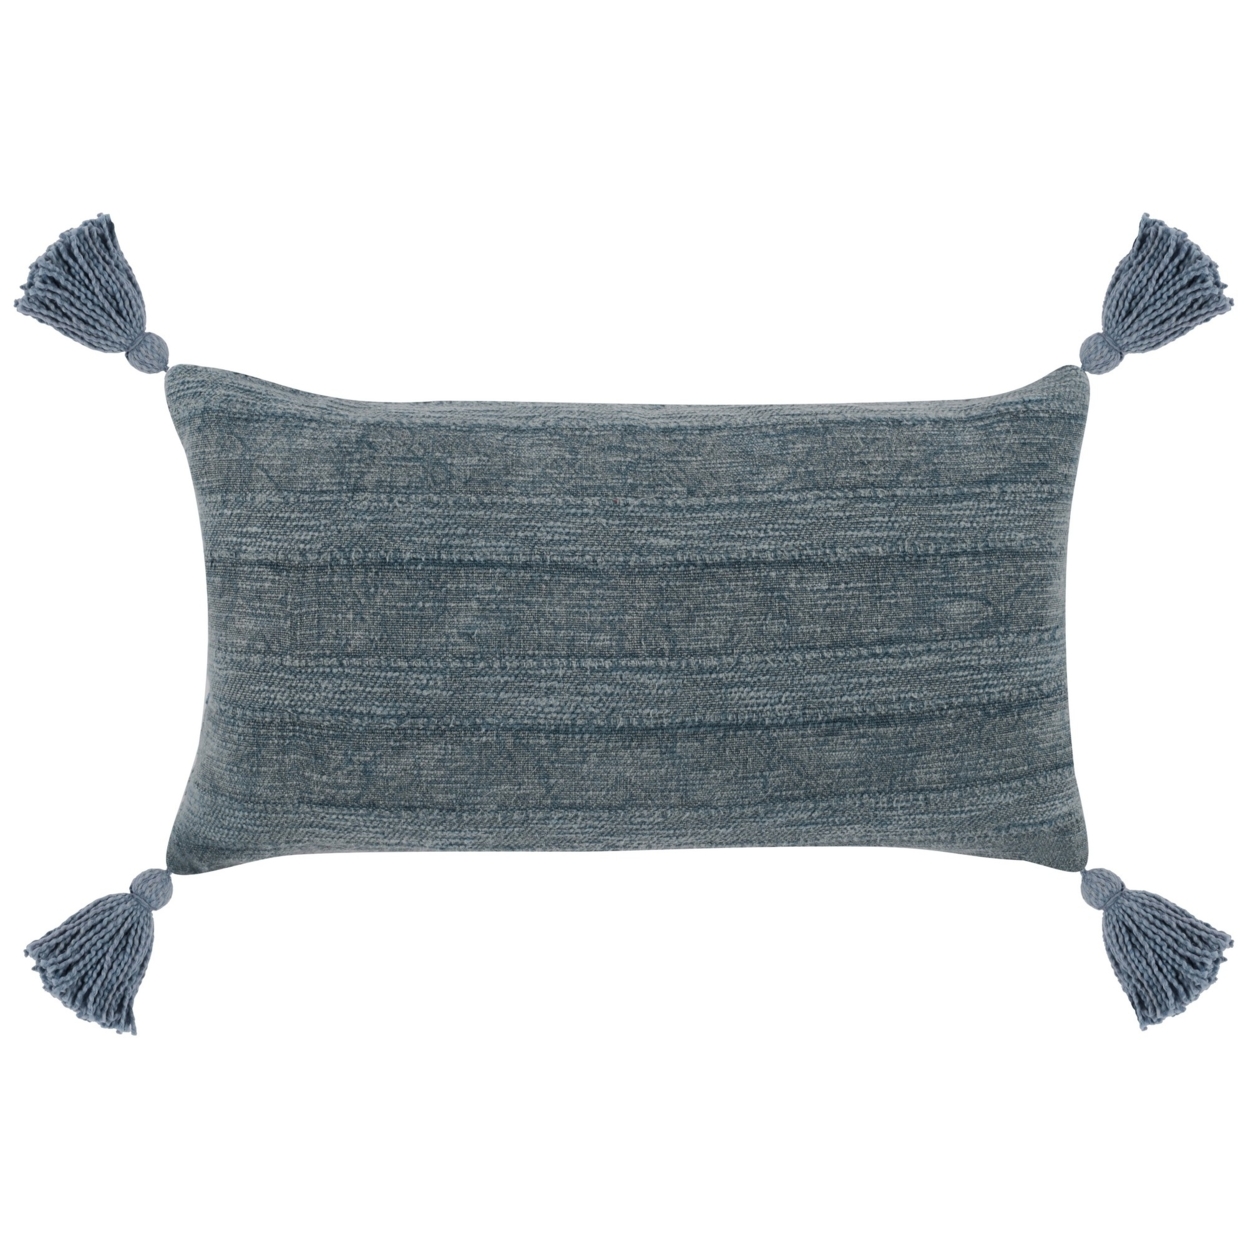 14 X 26 Lumbar Throw Pillow, Handwoven Stripes, Cotton Linen, Tassels, Blue, Saltoro Sherpi